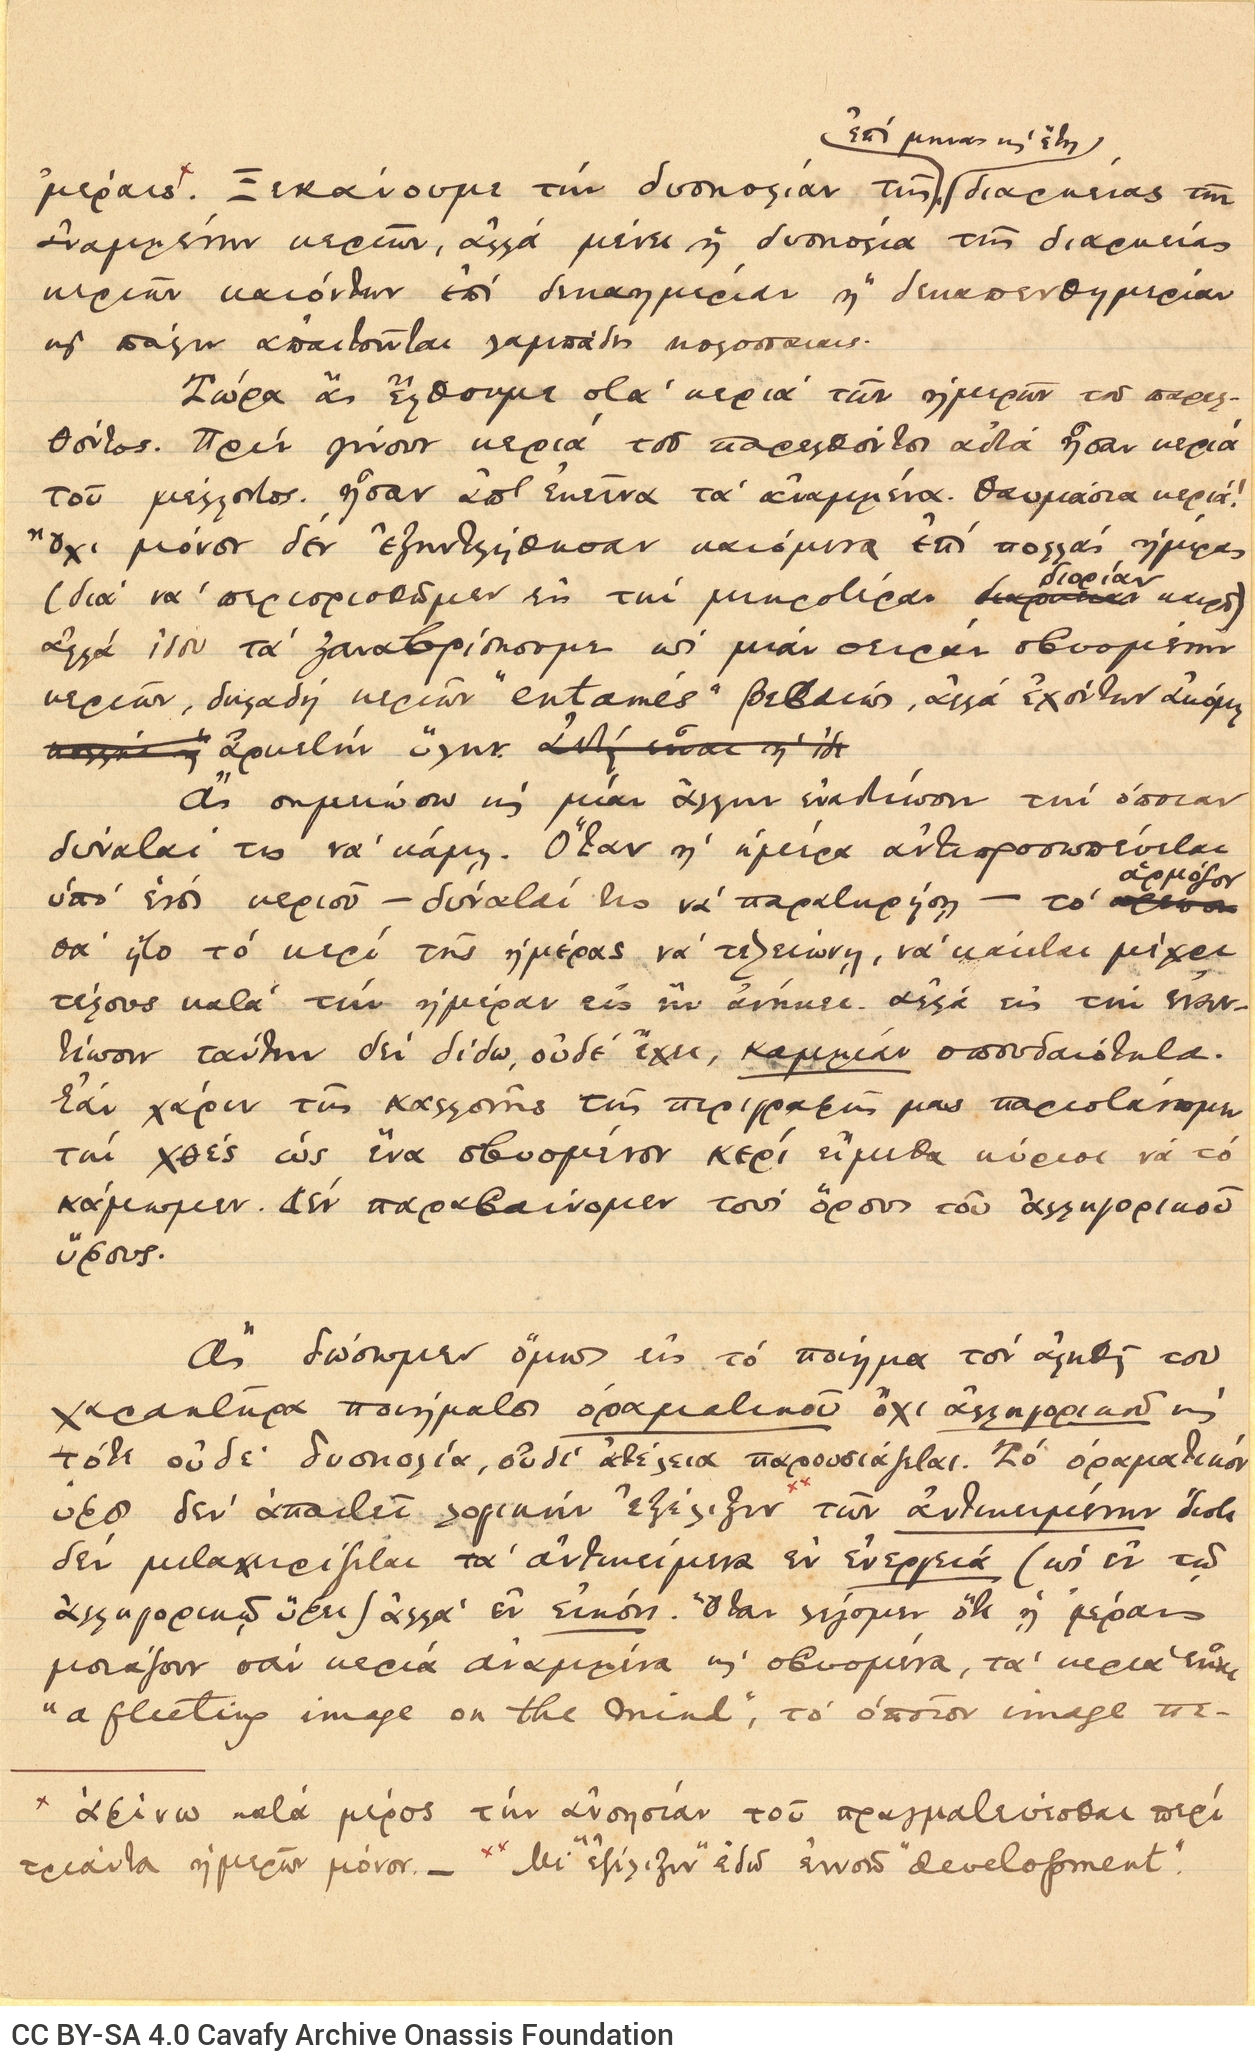 Χειρόγραφο του ποιήματος «Κεριά» και εκτενές κείμενο με σχόλια γι�